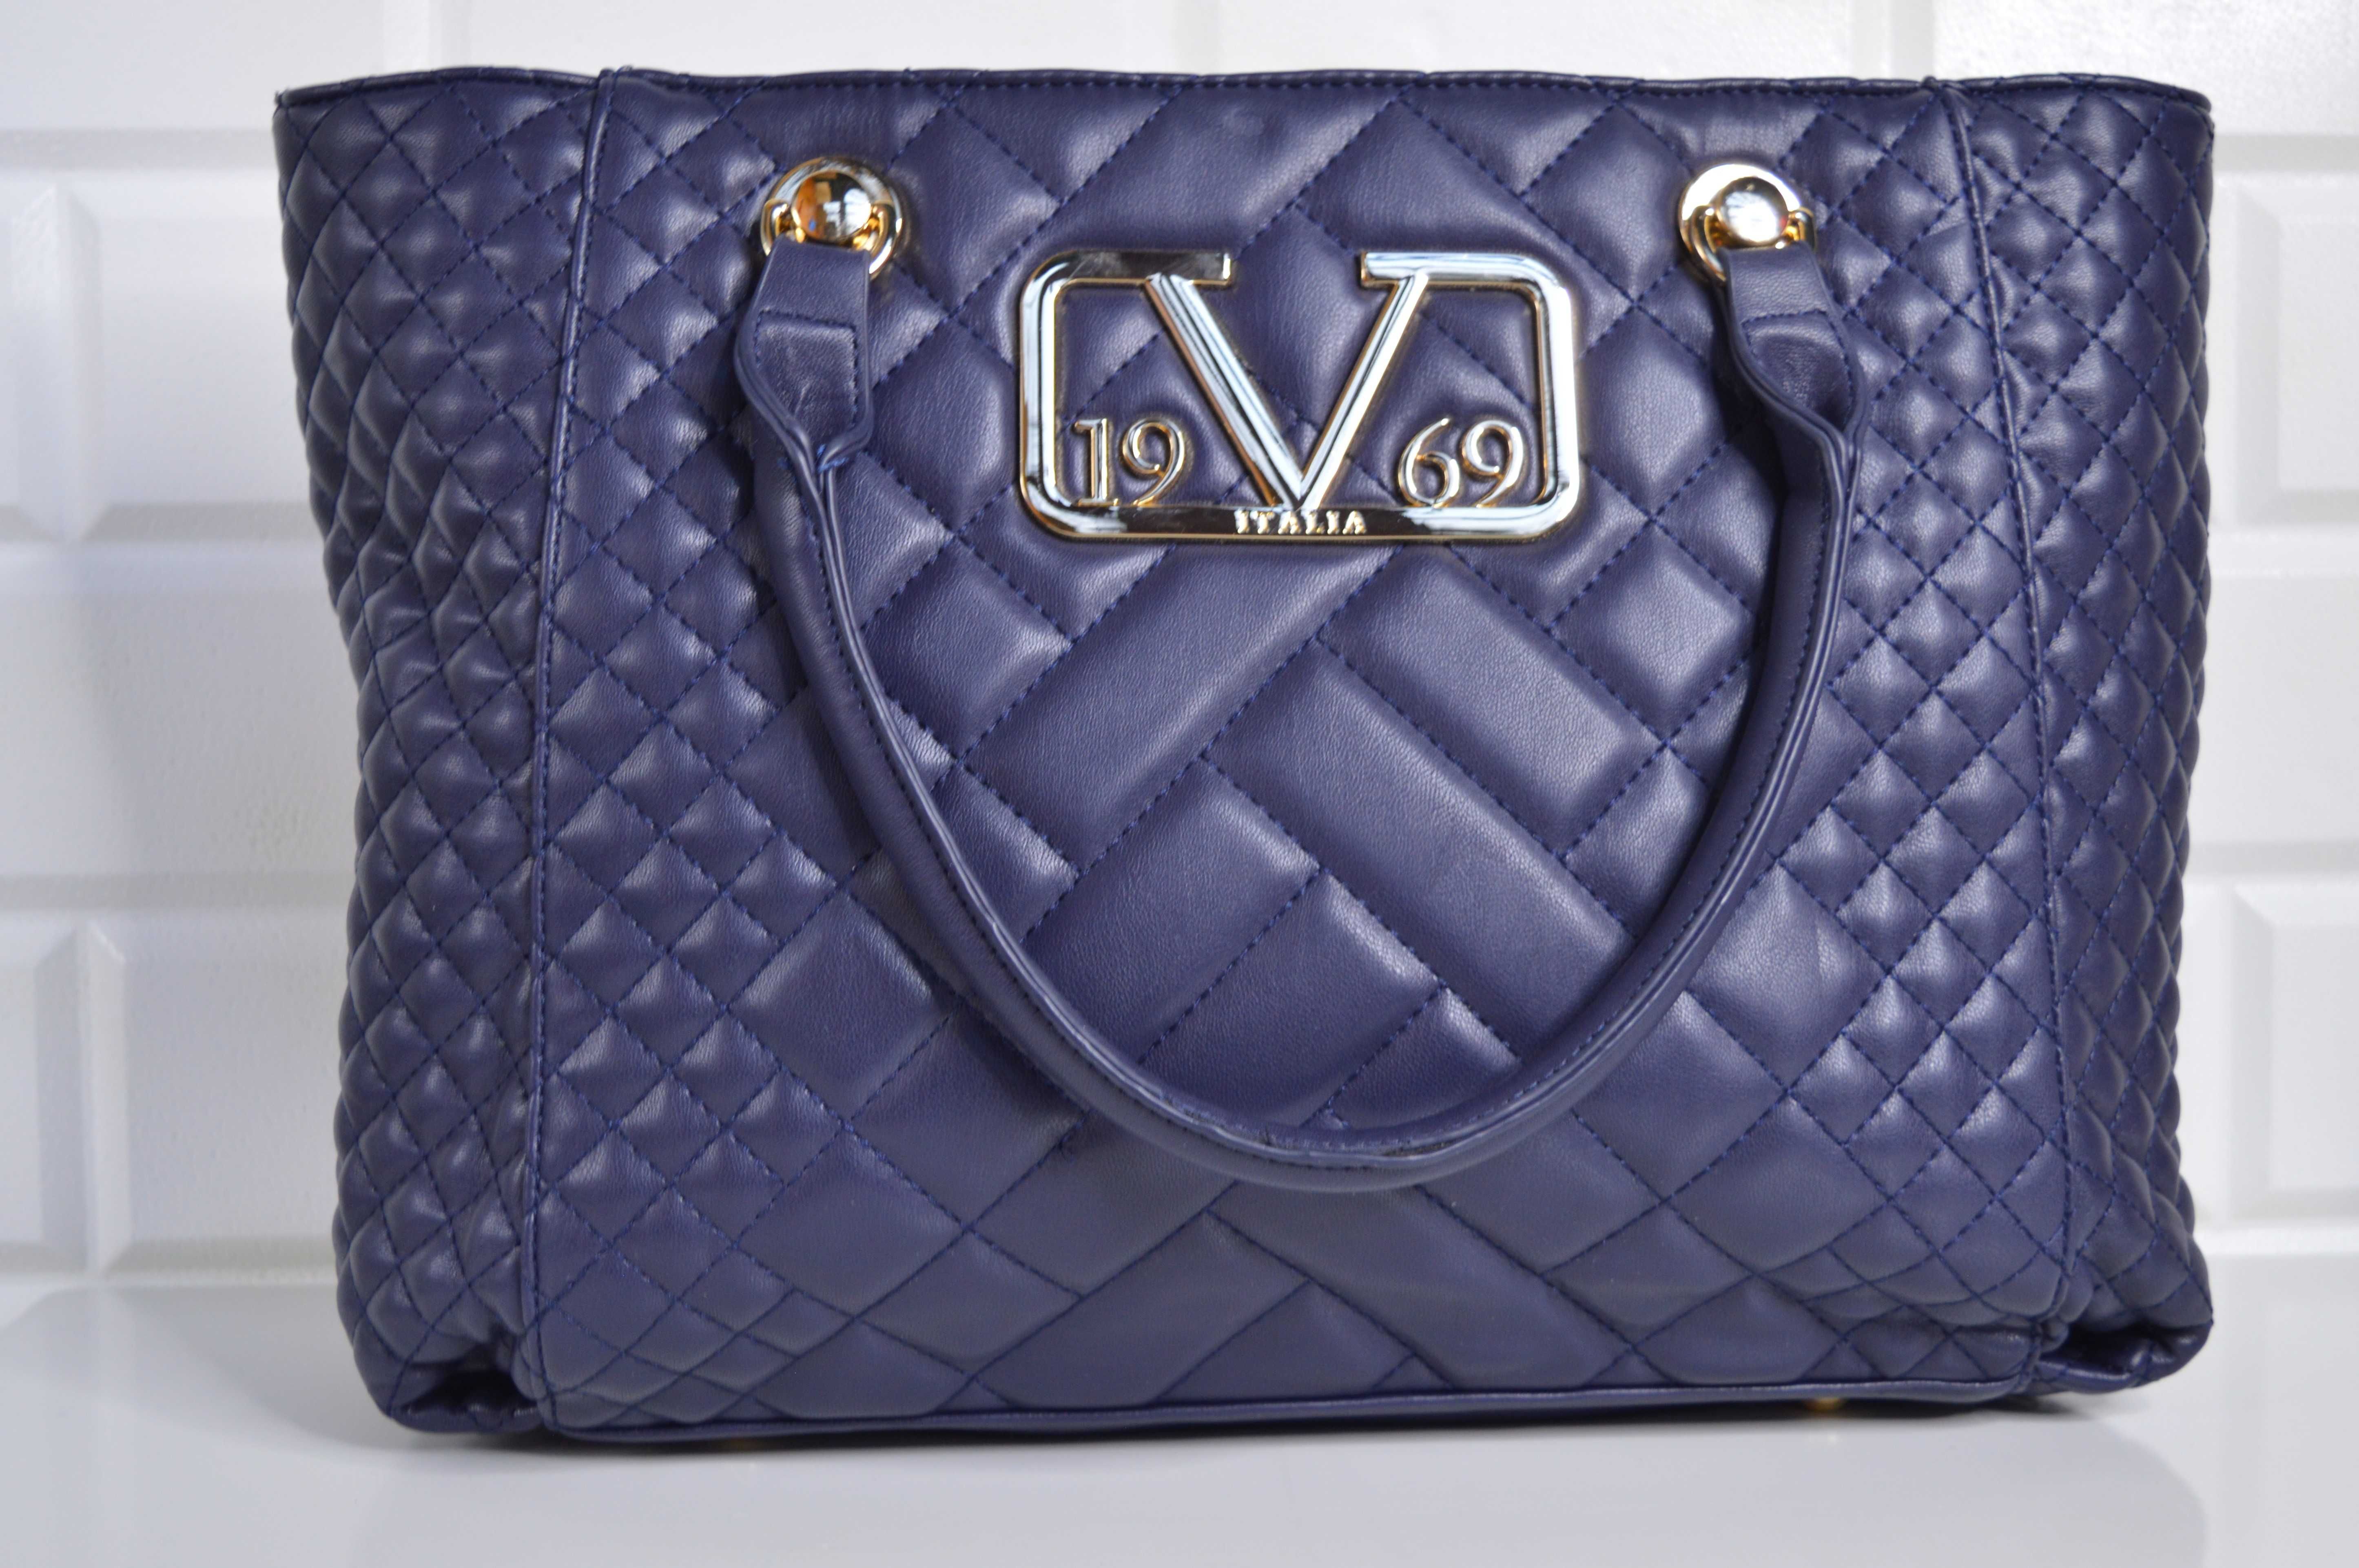 Geantă Versace 19V69 - albastră